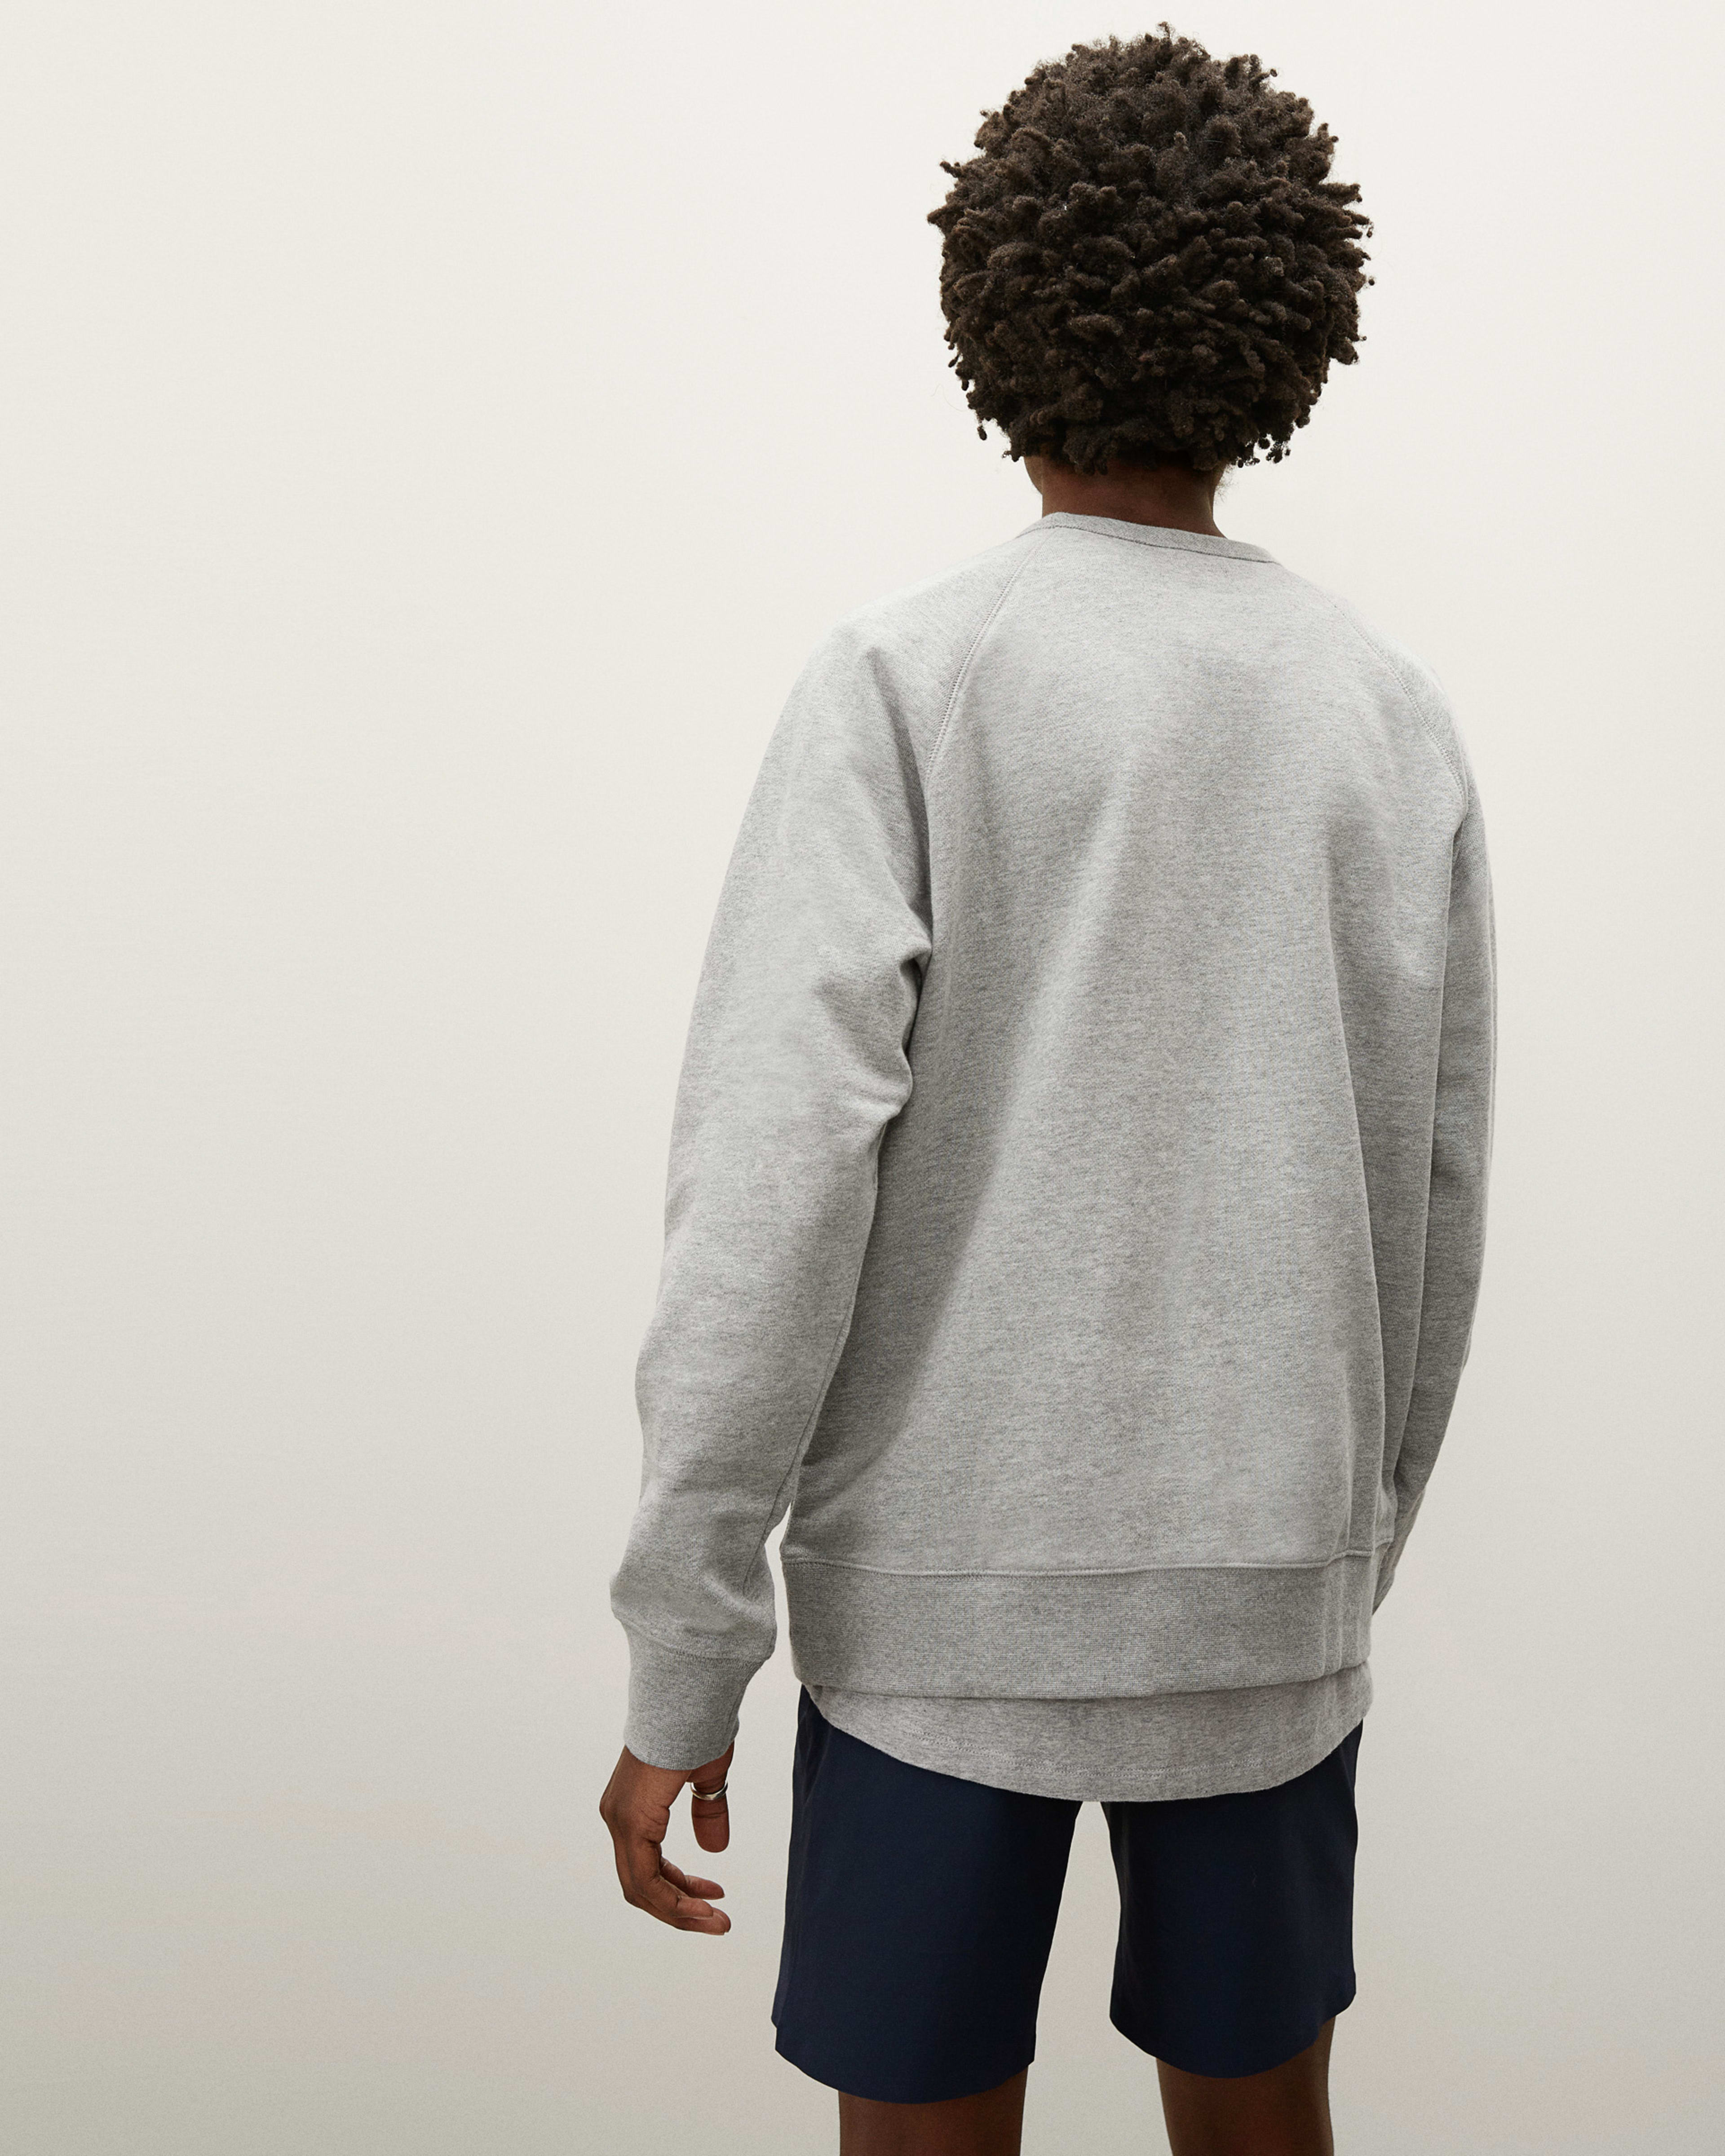 The 100% Human Typography Sweatshirt Heathered Grey – Everlane